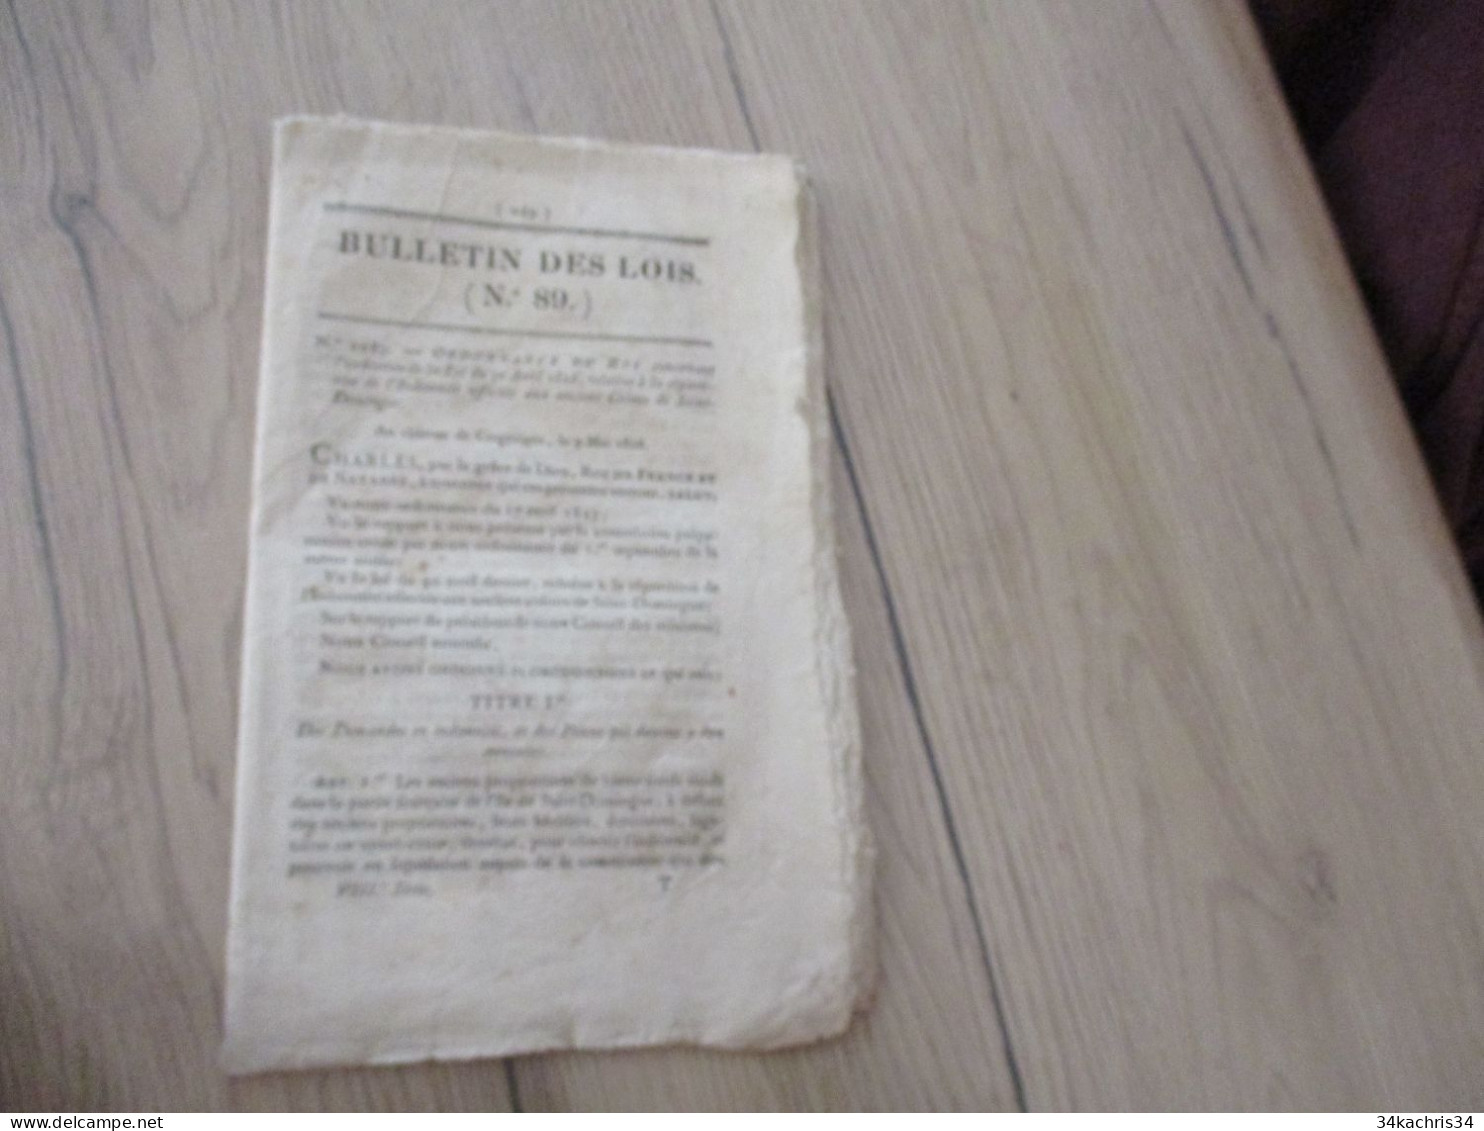 Bulletin Des Lois N°89 09/05/1826 Idemnité Des Anciens Colons De Saint Domingue 27 P Liste Des Colons - Décrets & Lois